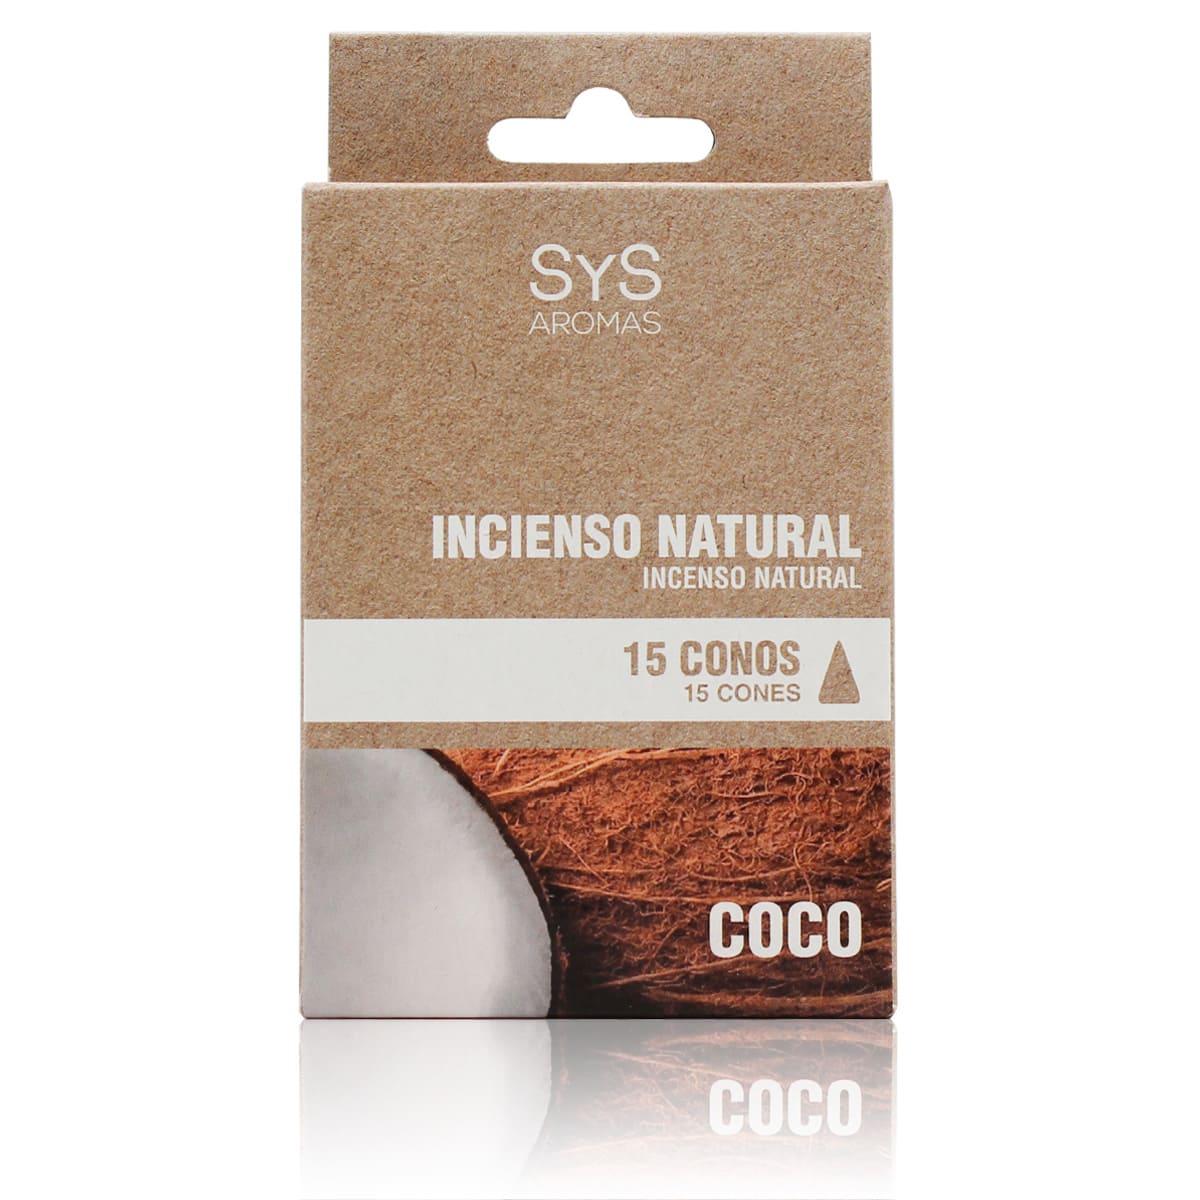 Comprar Incienso Natural Coco 15 Conos SYS Aromas